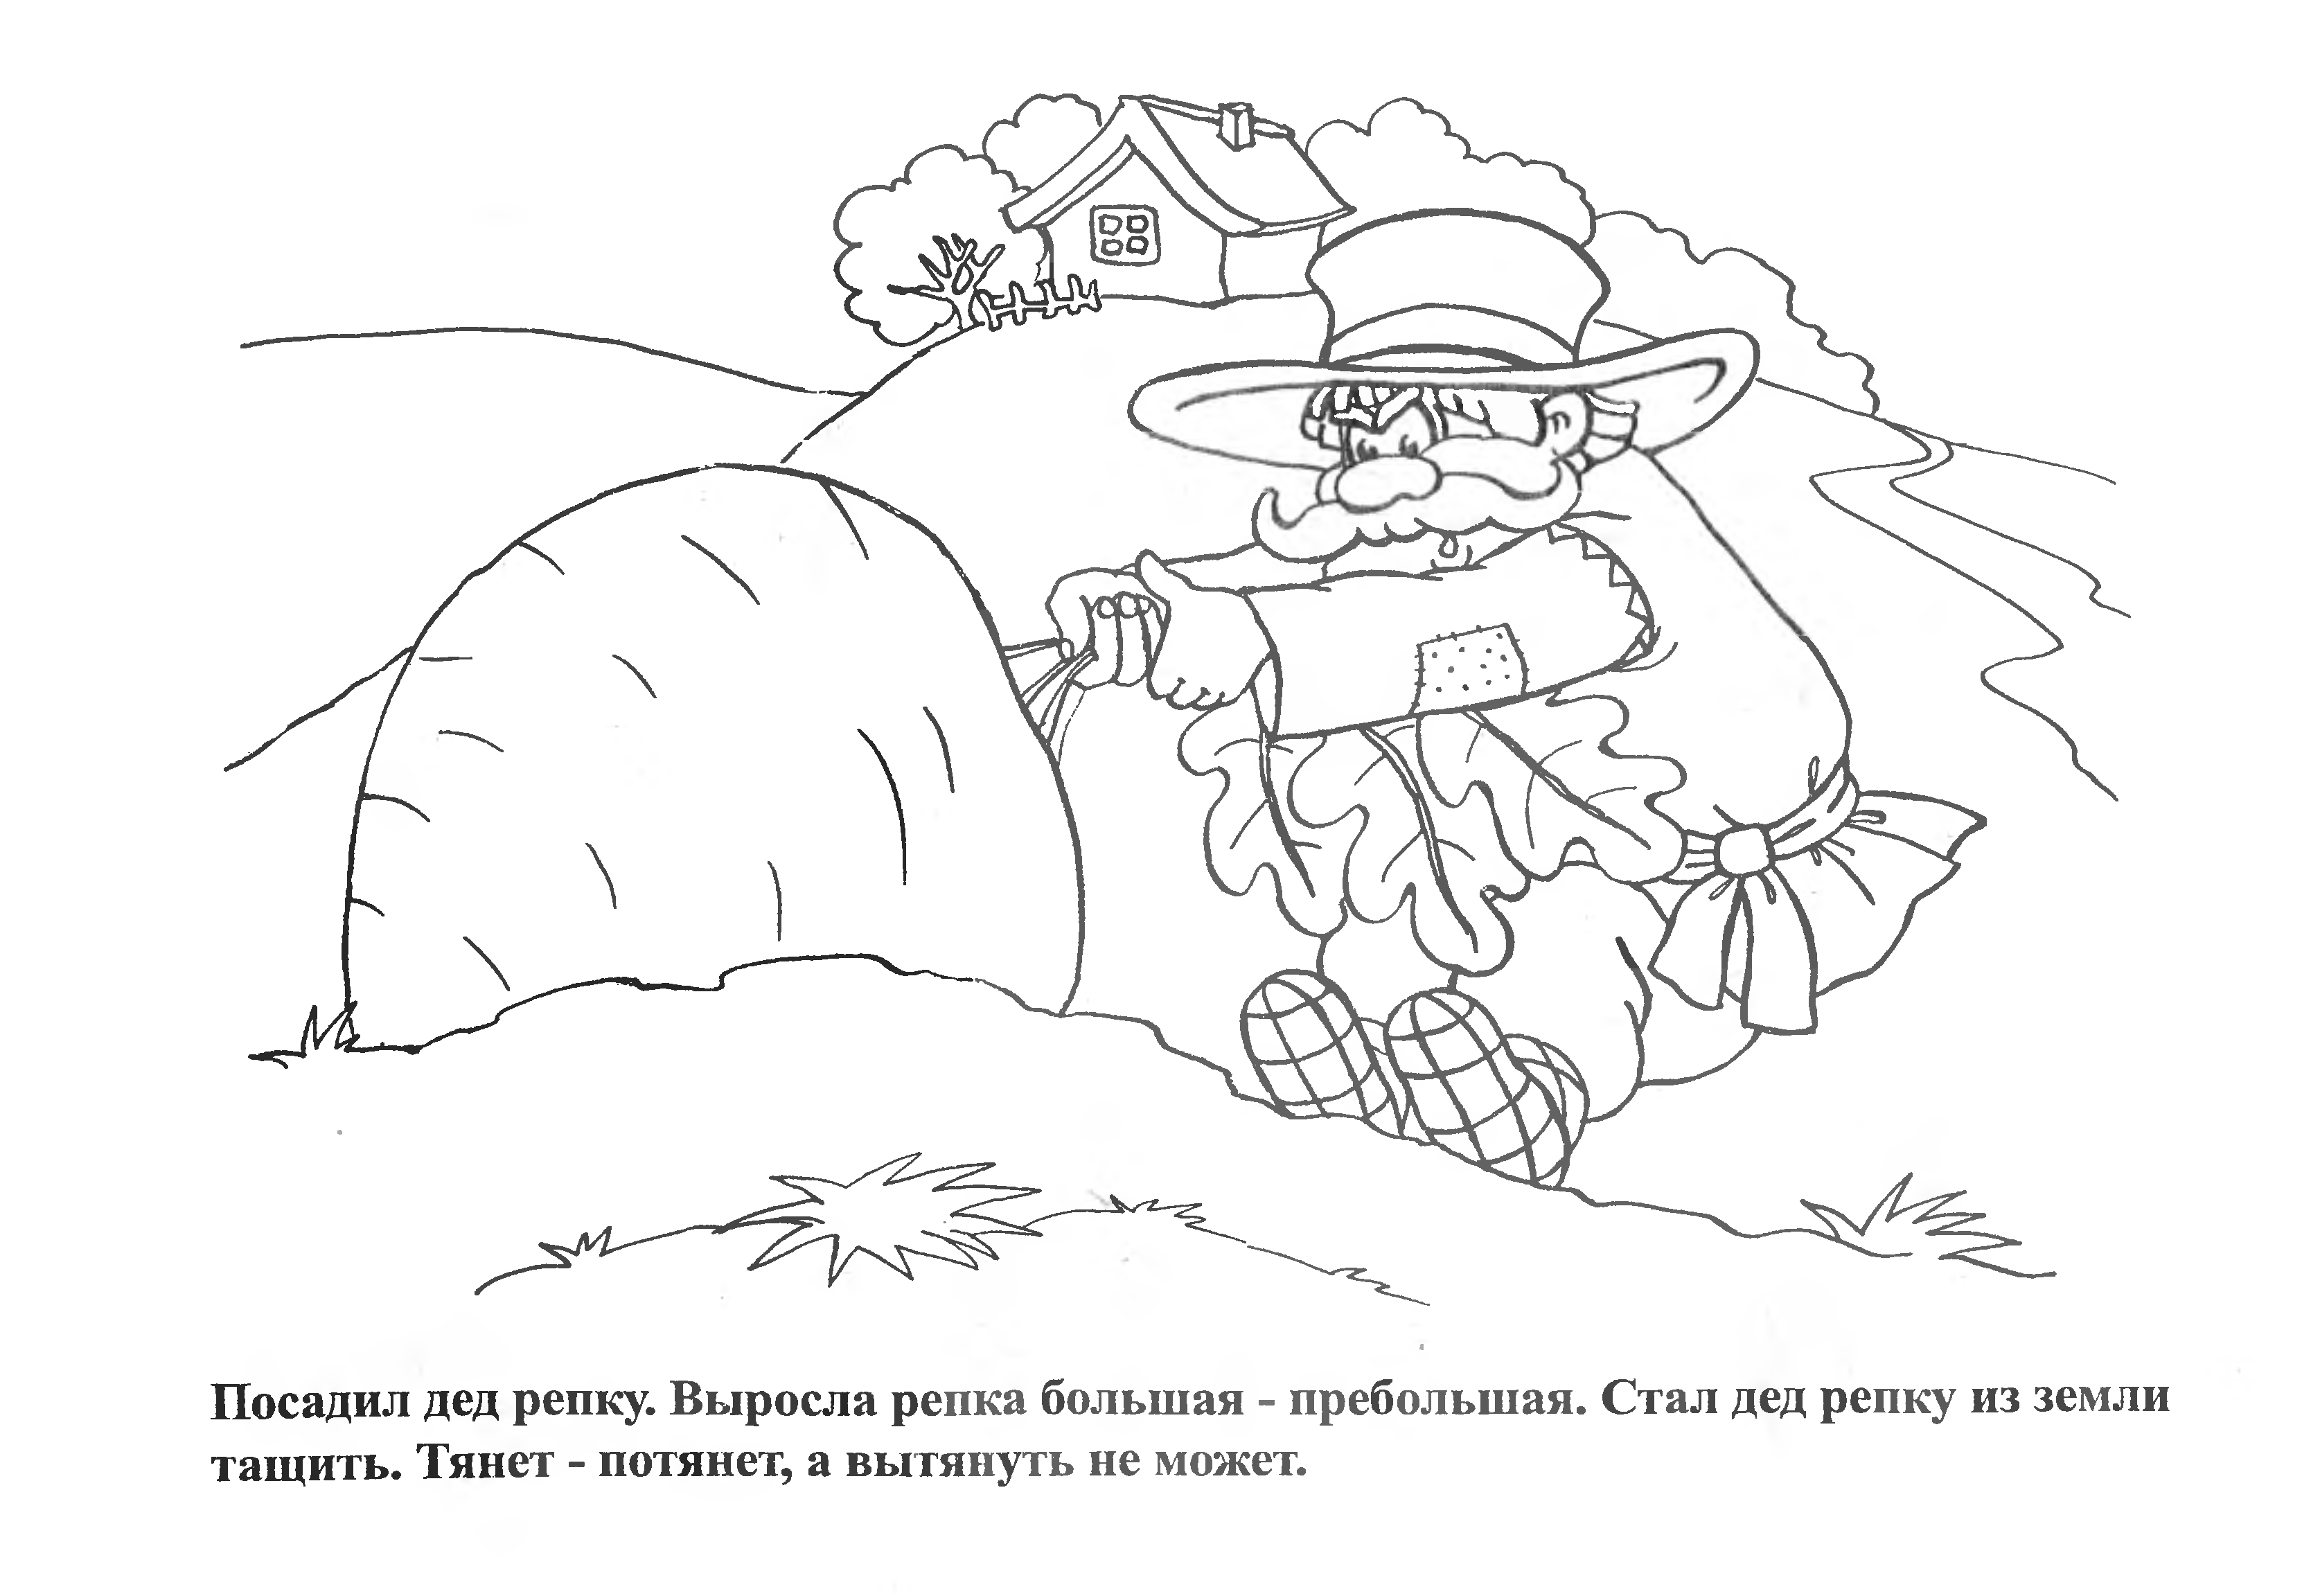 Иллюстрации к сказке Репка раскраска для детей